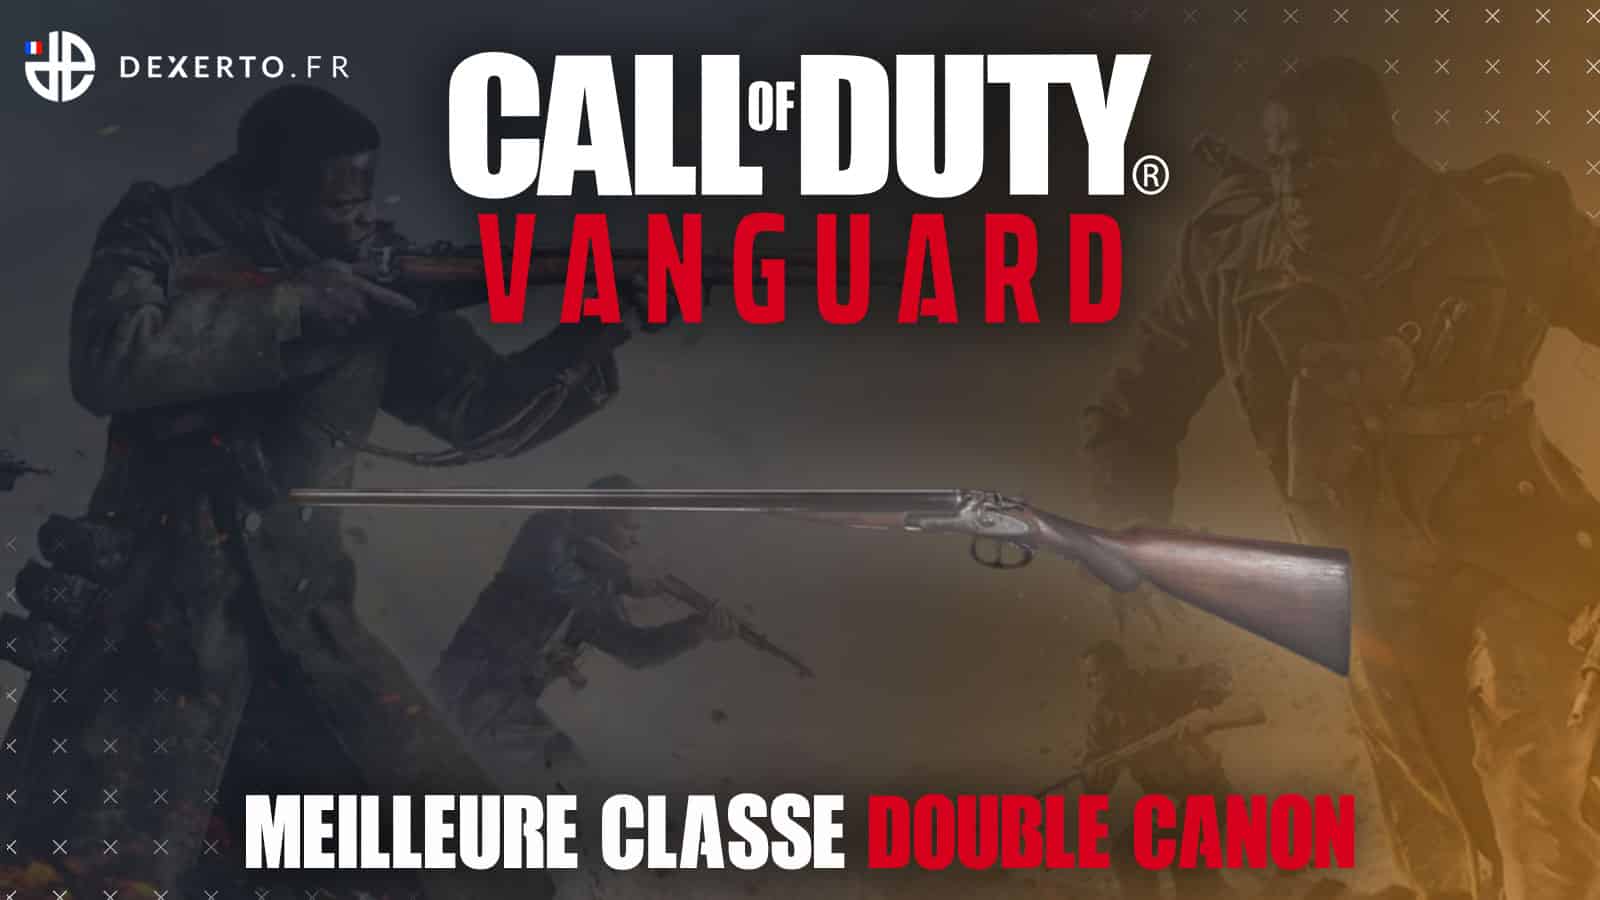 Double canon Vanguard